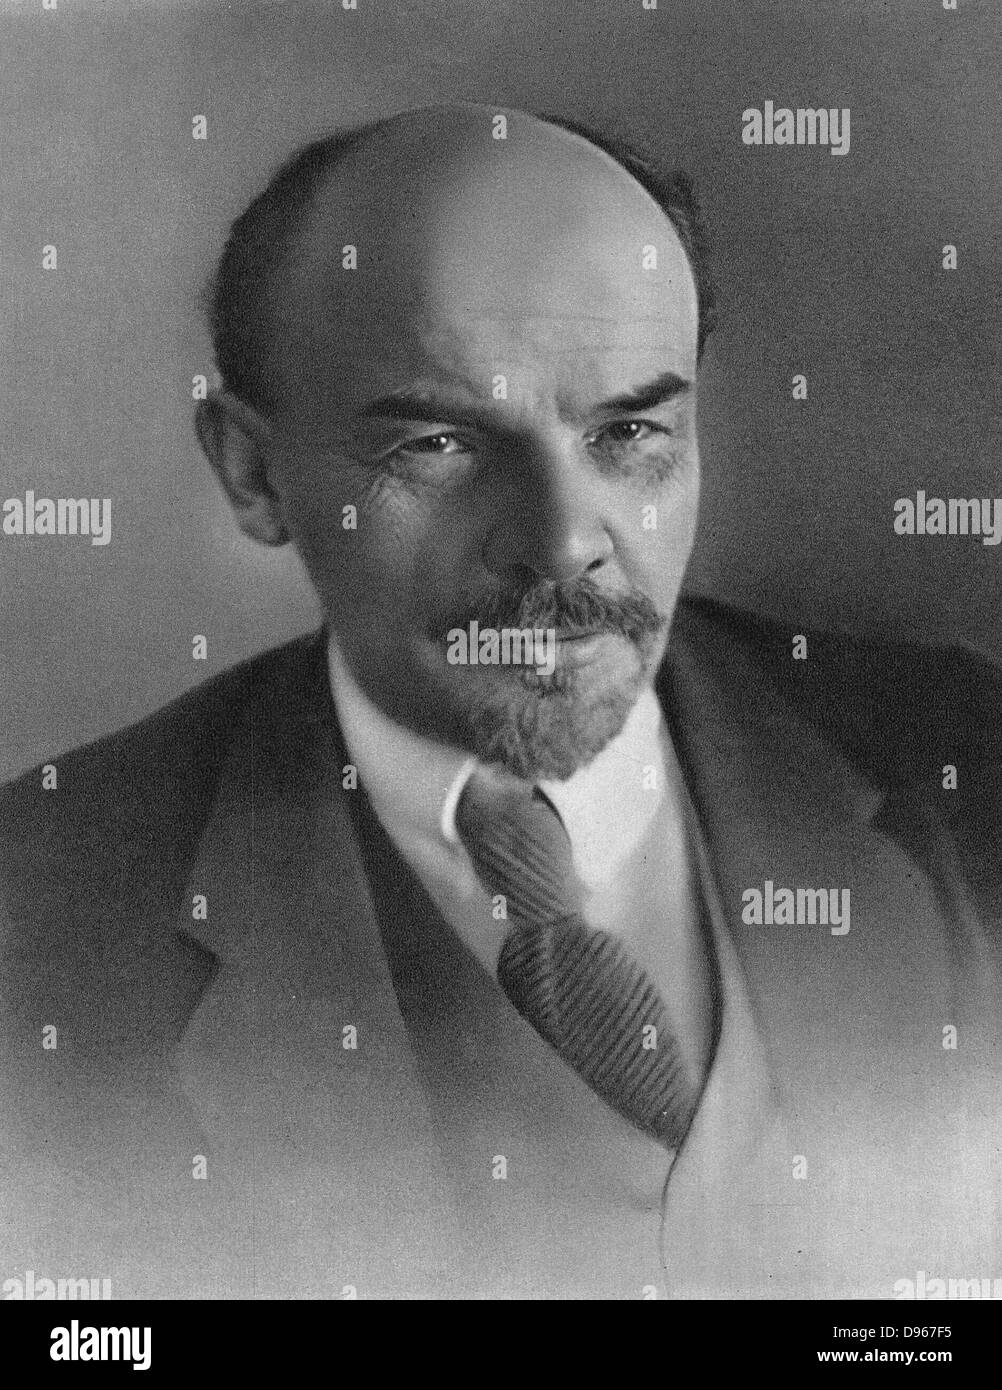 Vladimir Ilyich Lenin (1870-1924 Uljanow) c1917. Russische revolutionäre. Stockfoto